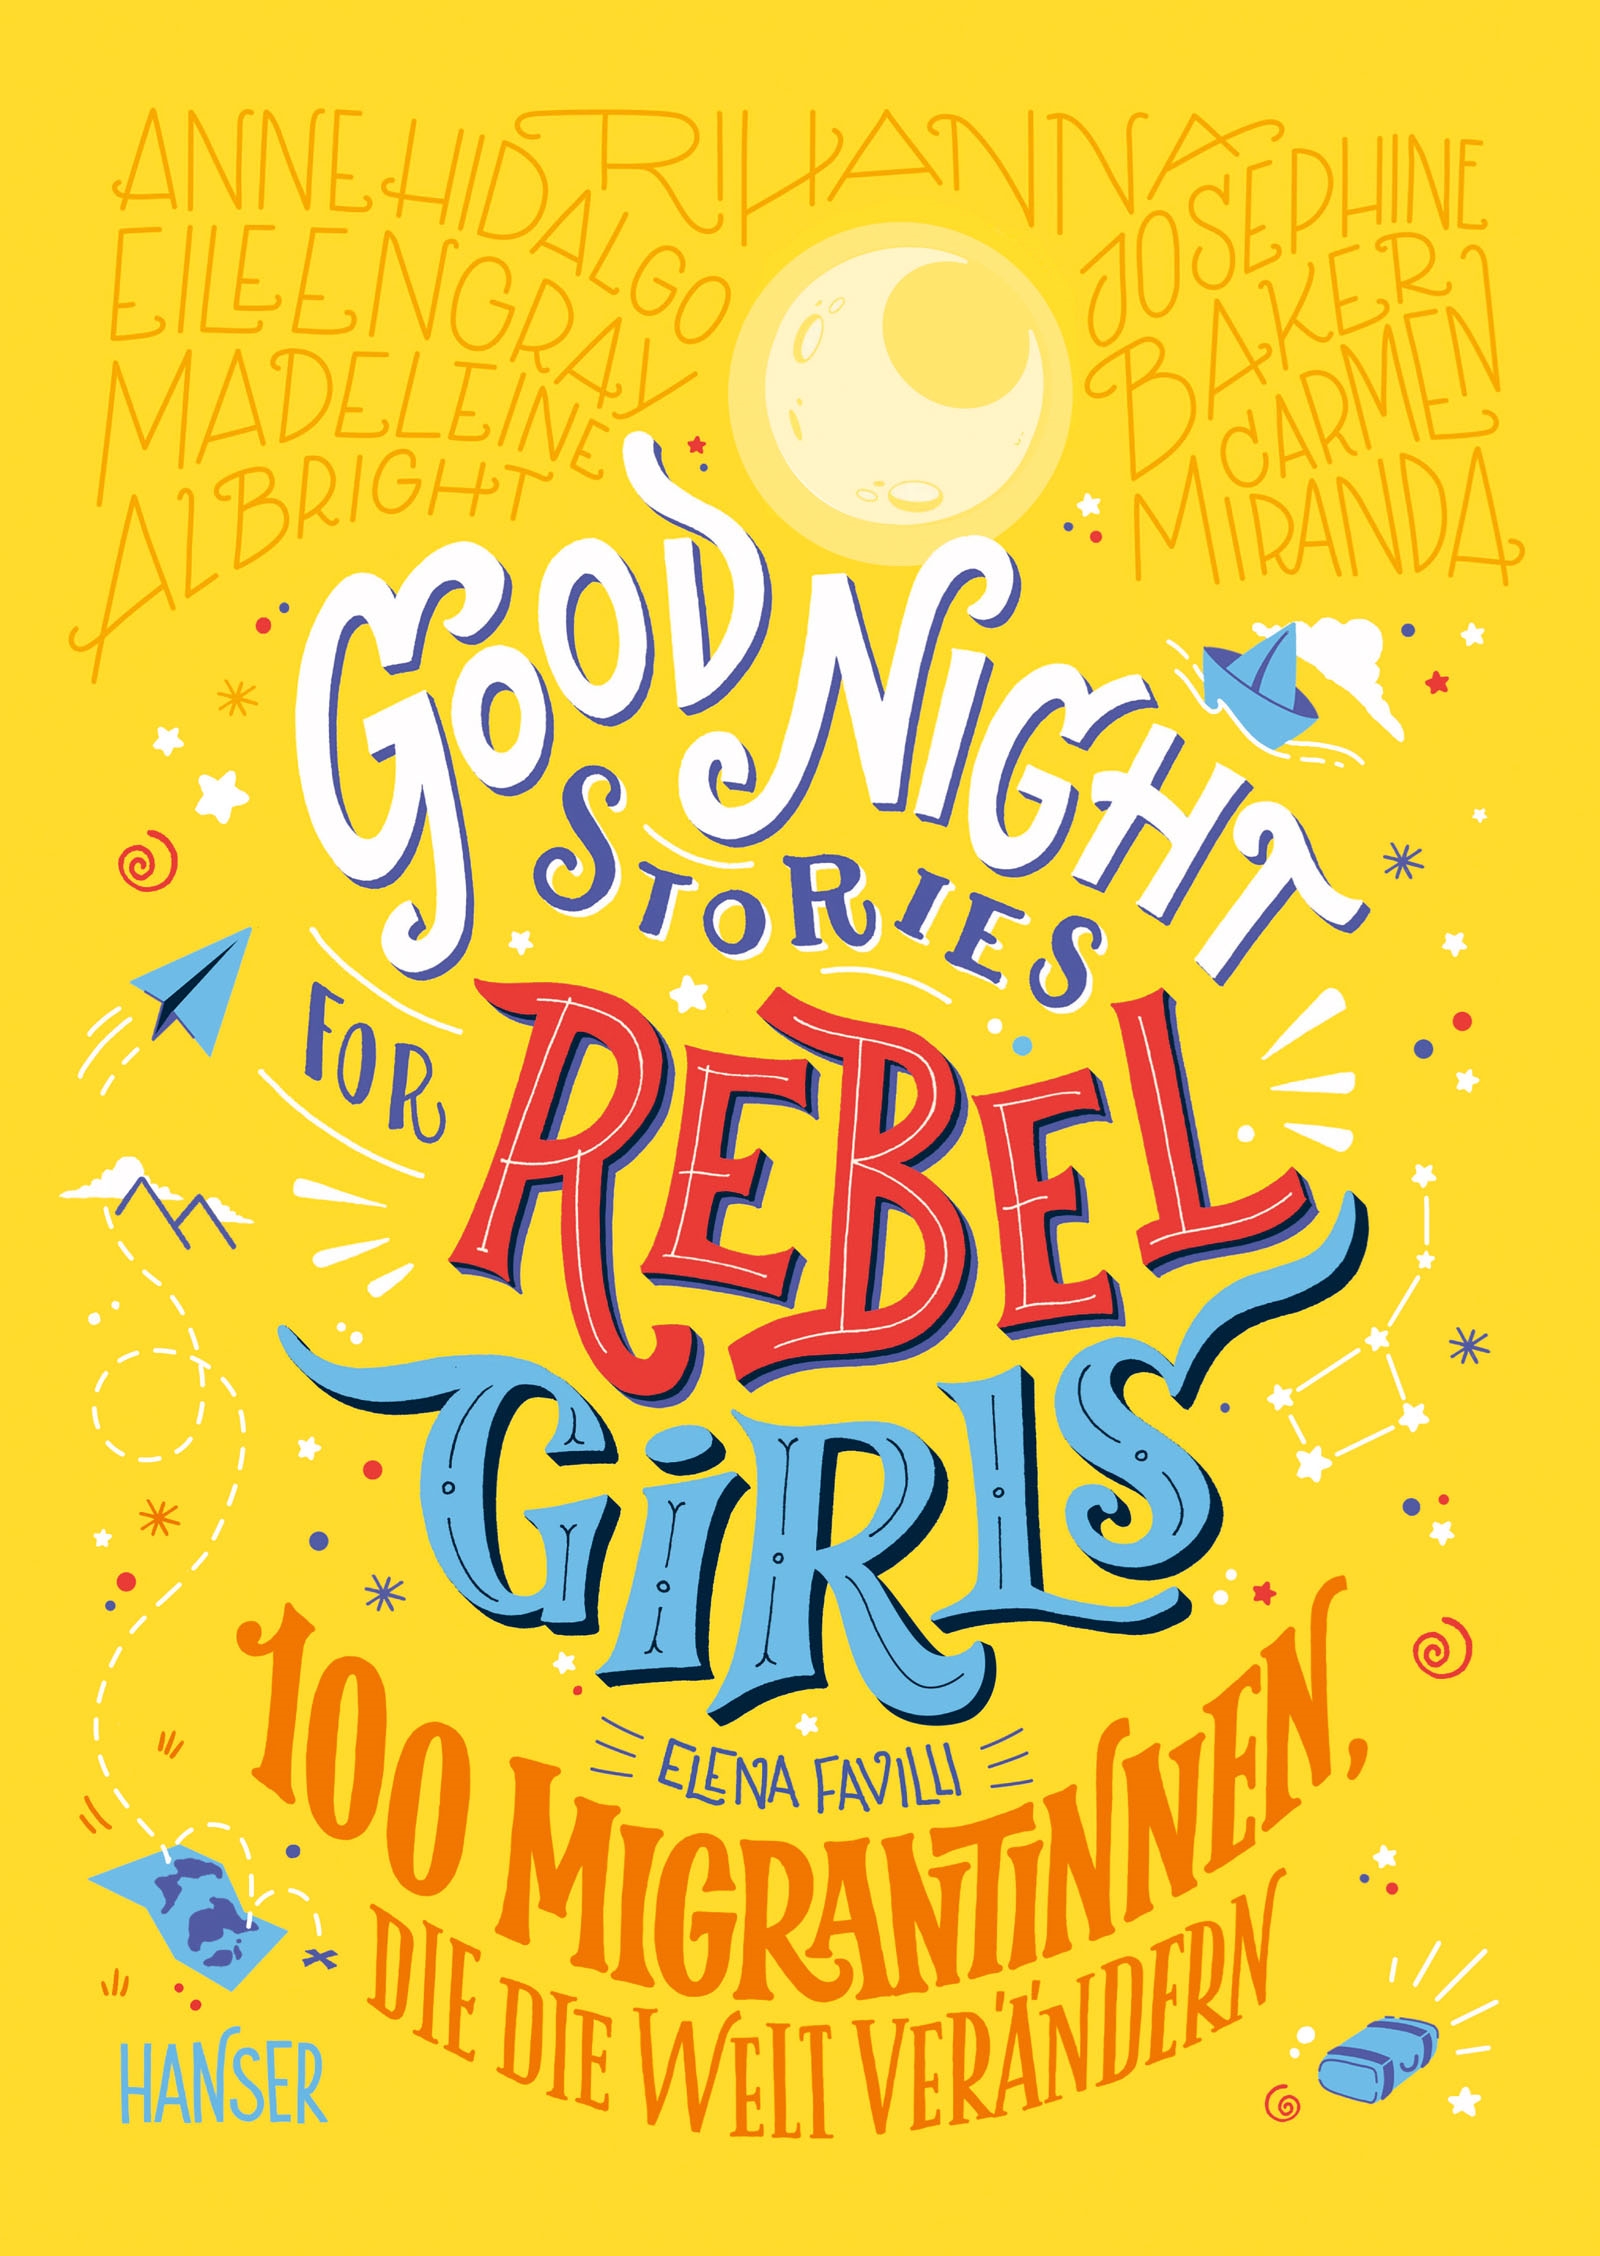 »GOOD NIGHT STORIES FOR REBEL GIRLS 3« - HANSER